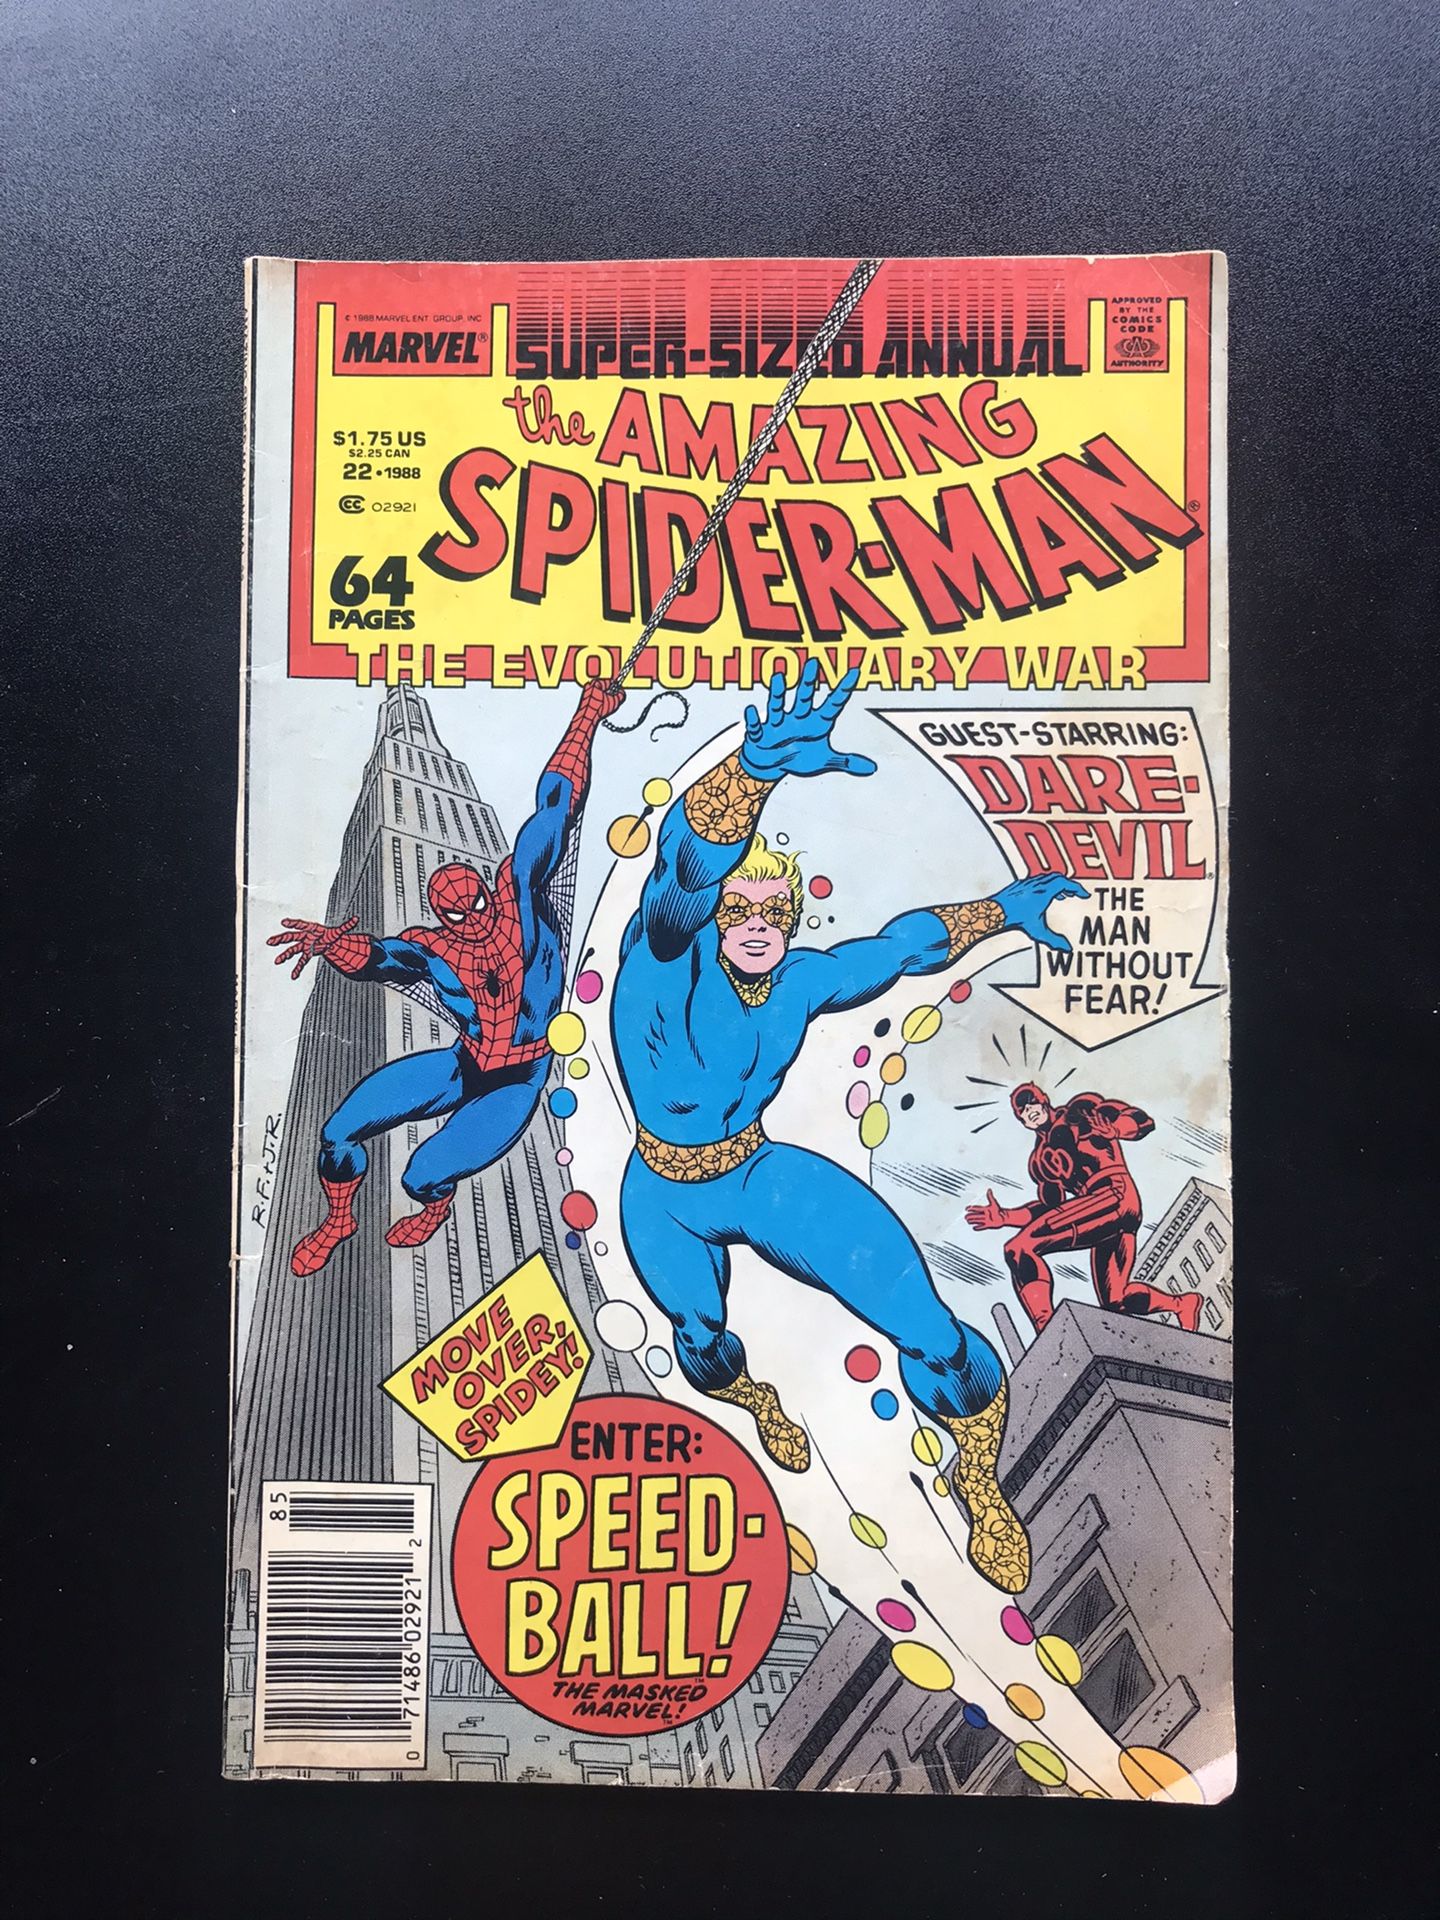 The Amazing Spiderman Comic #22